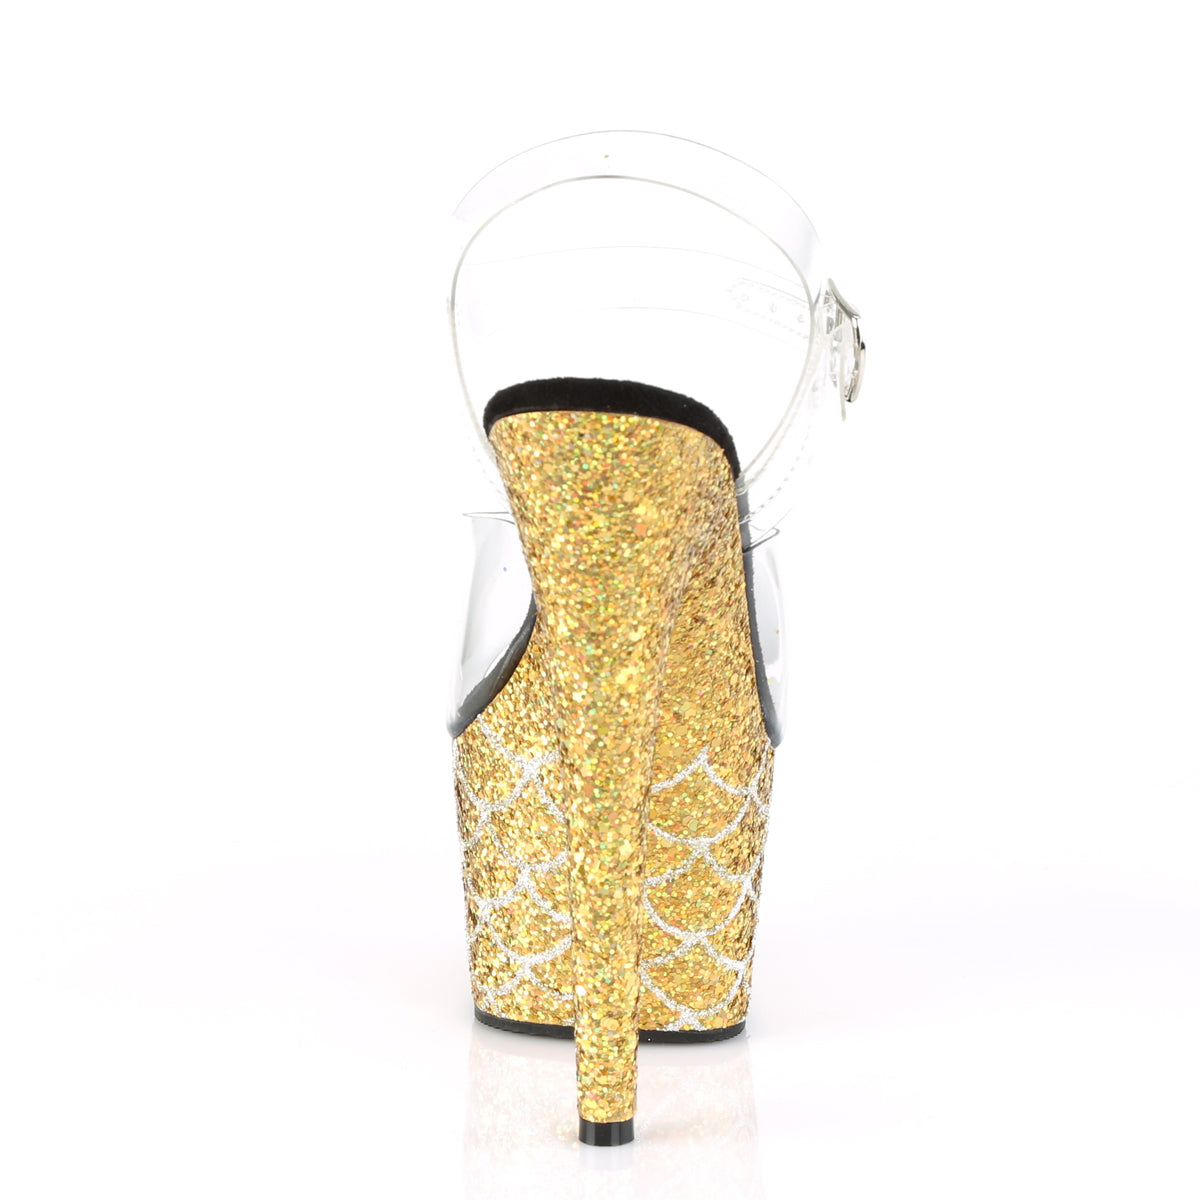 Pleaser Sandali da donna ADORE-708mslg CLR / GOLD multi glitter